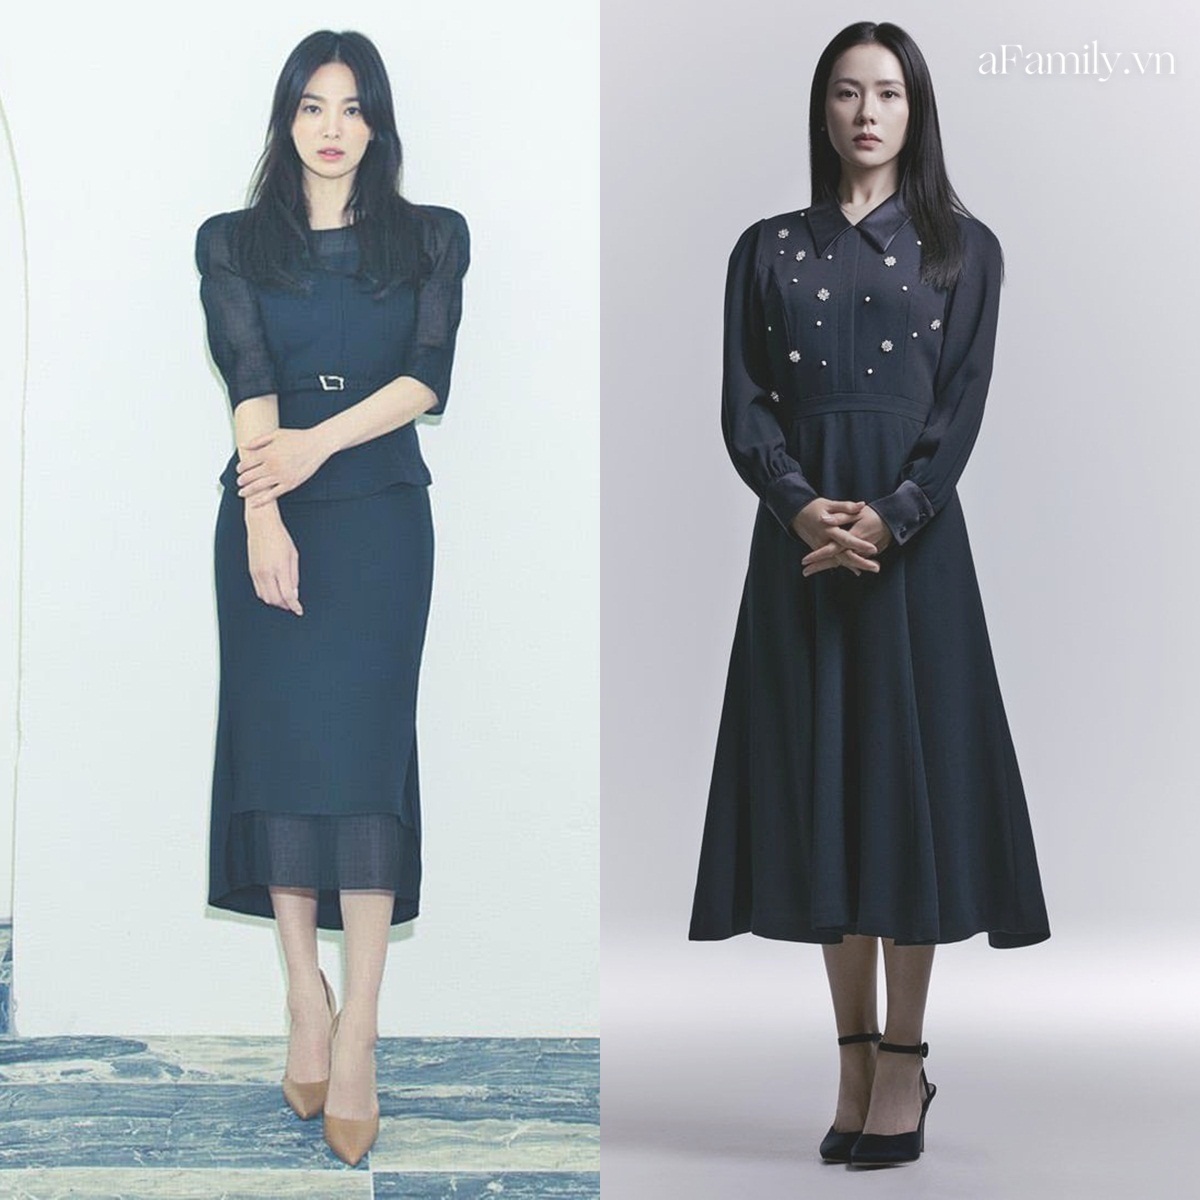 Song Hye Kyo Son Ye Jin làm mẫu đồ công sở Thu Đông - Ảnh 7.